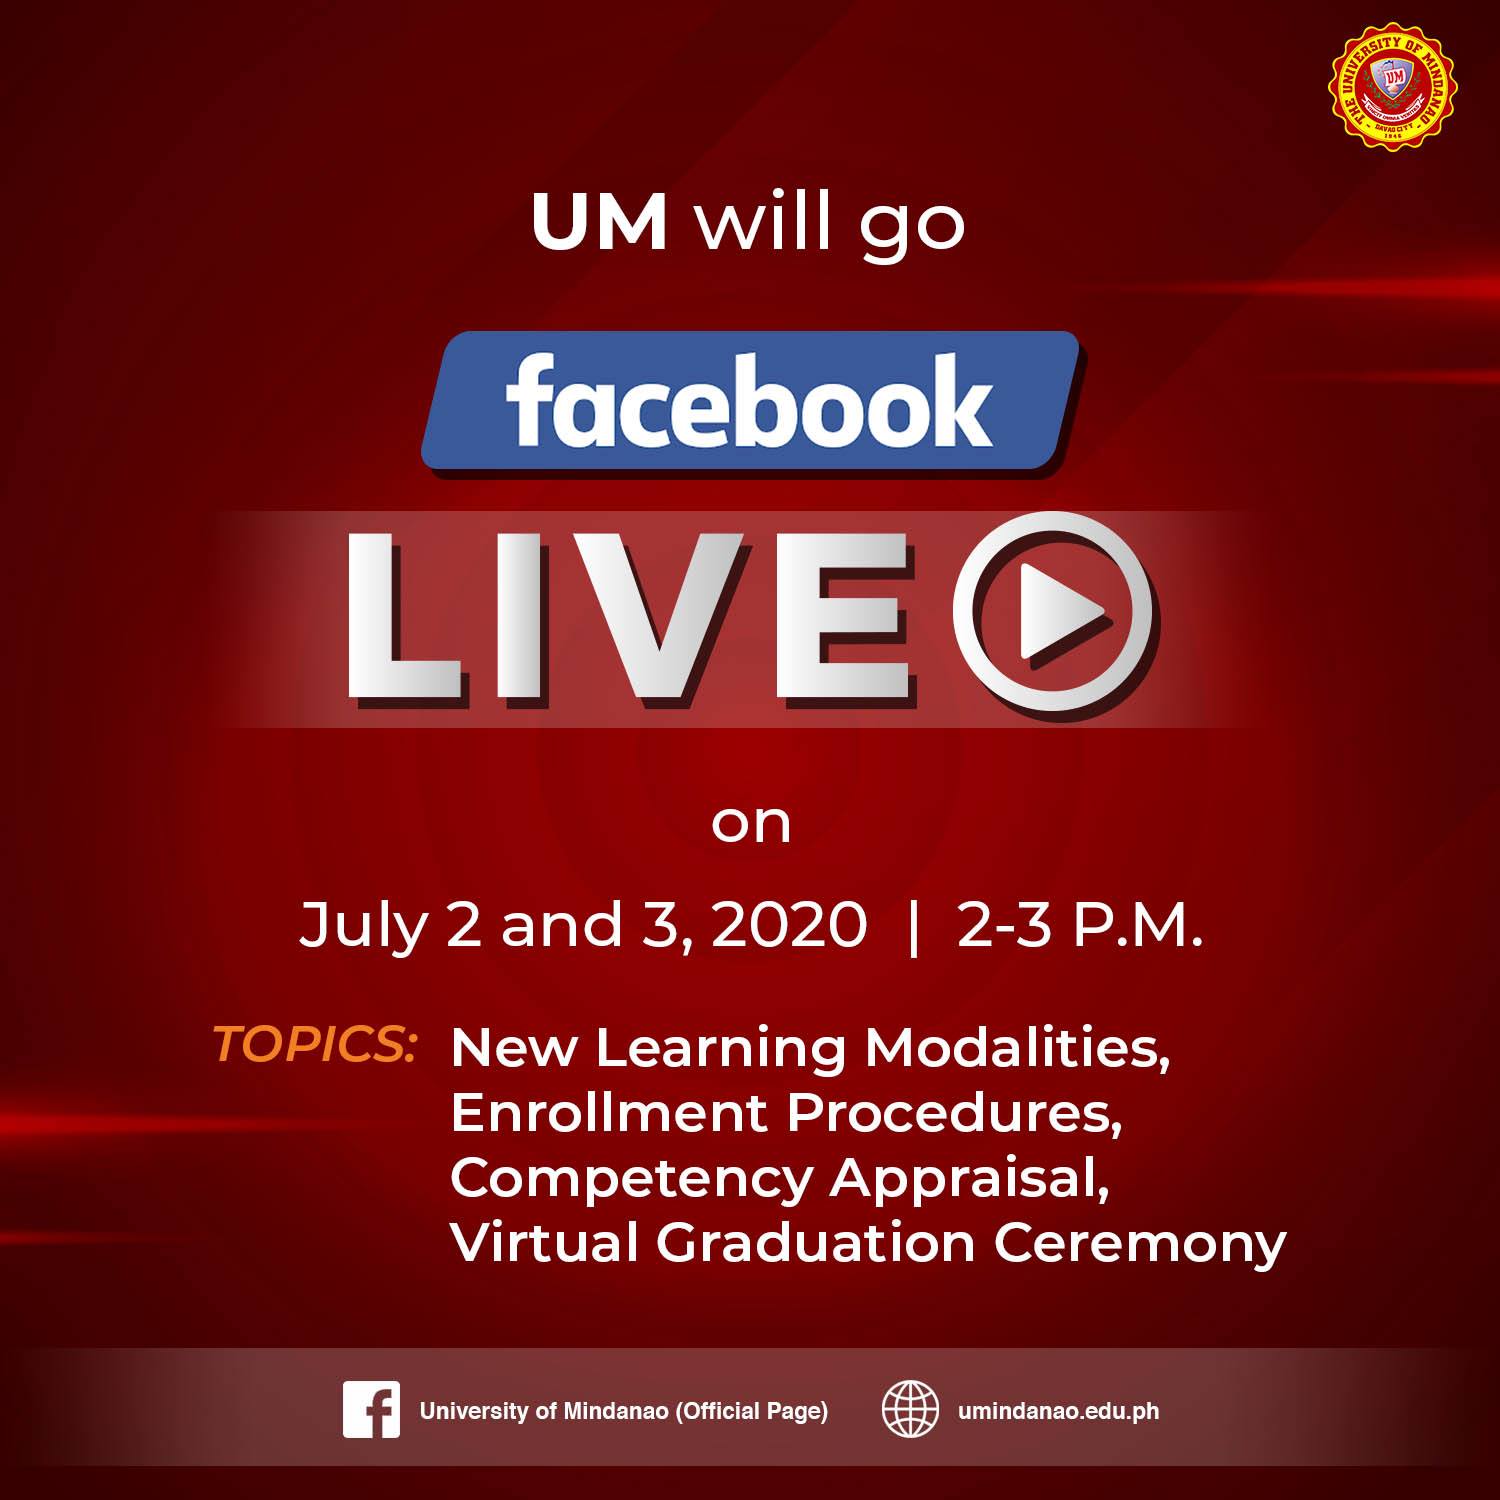 UM on Facebook Live